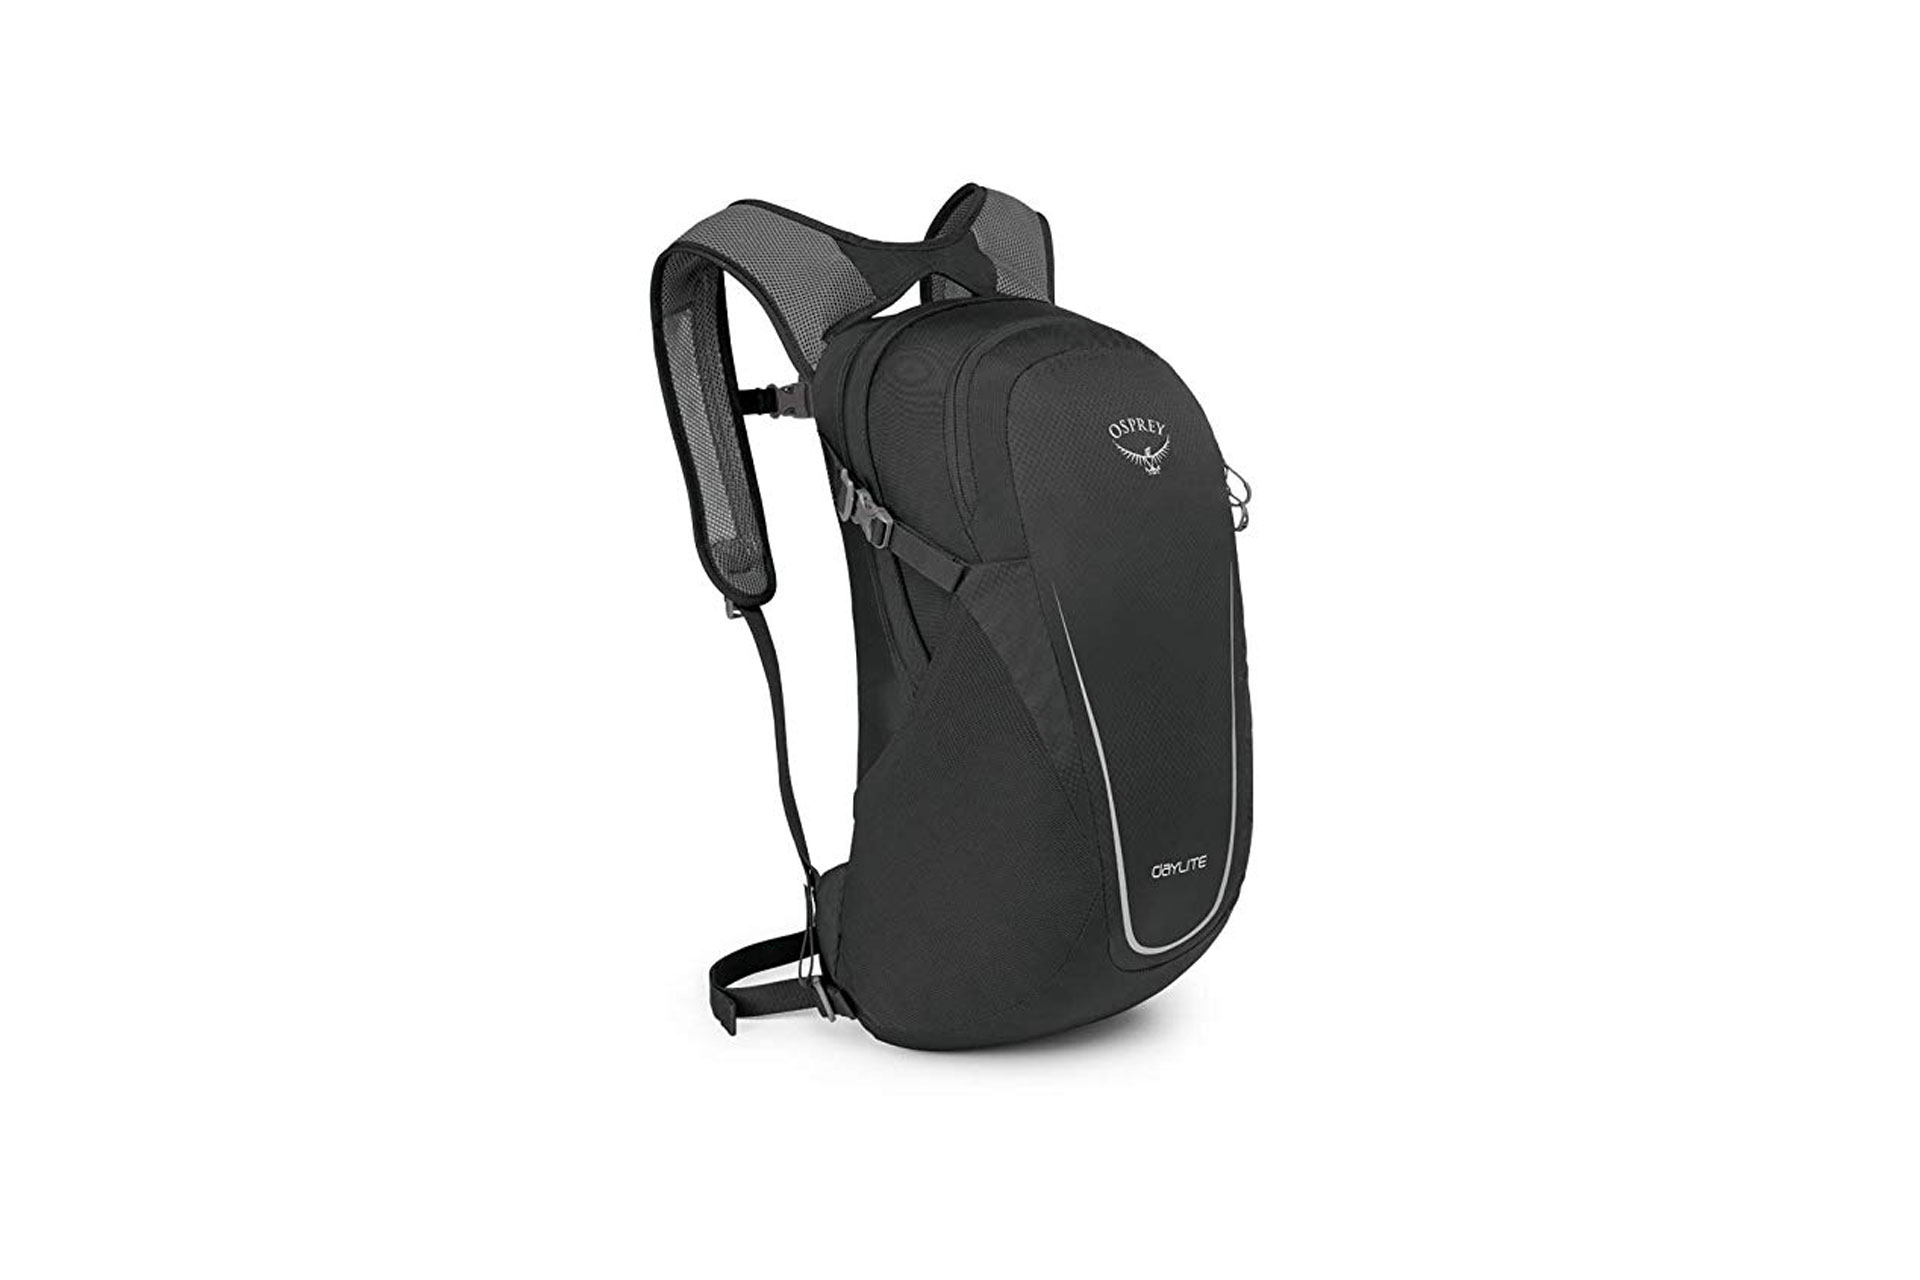 Osprey Backpack; Courtesy of Amazon